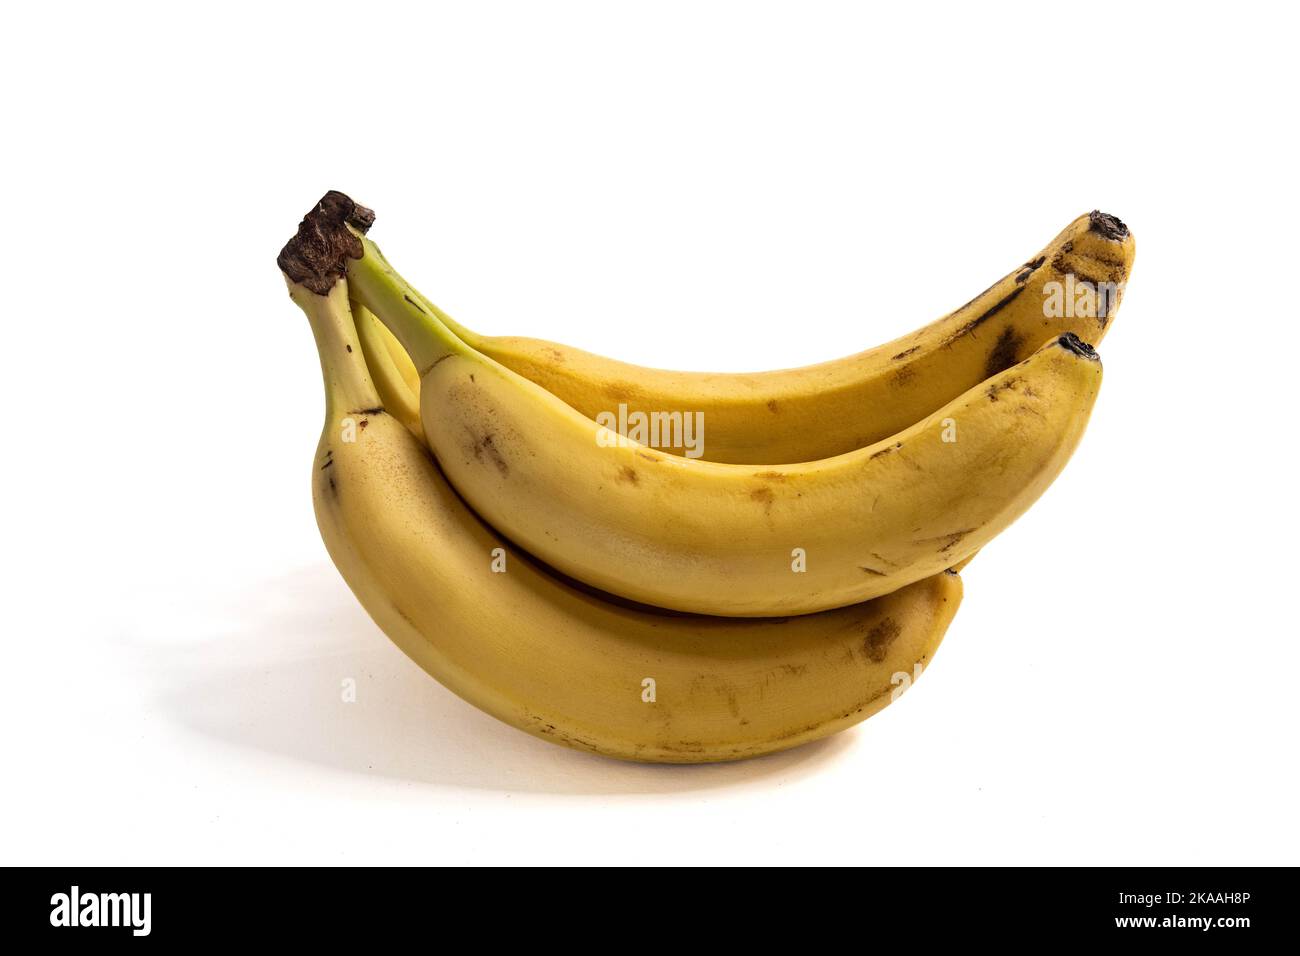 mazzetto di banane mature su una superficie bianca Foto Stock